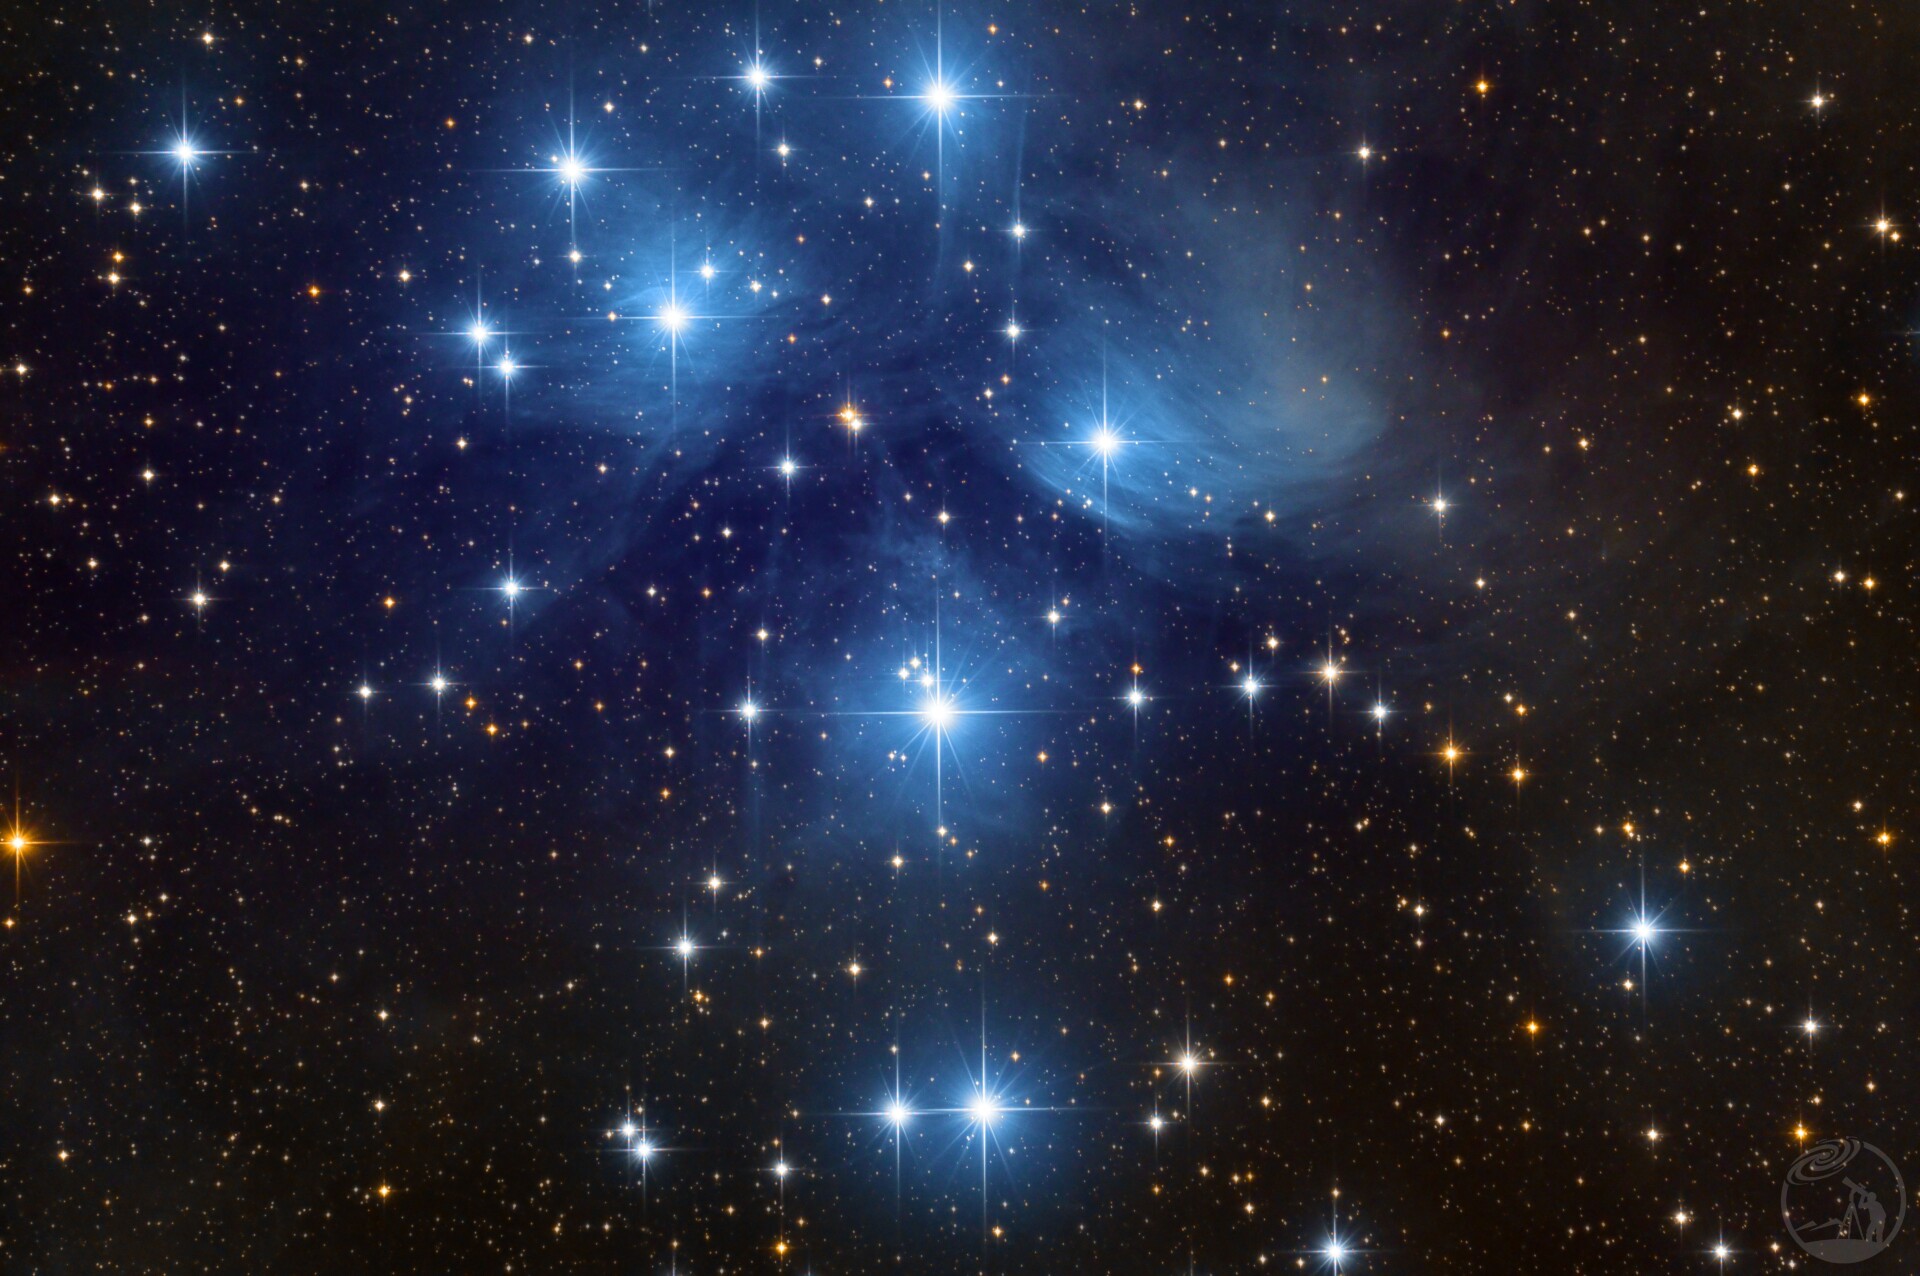 金牛座昴星团(M45)